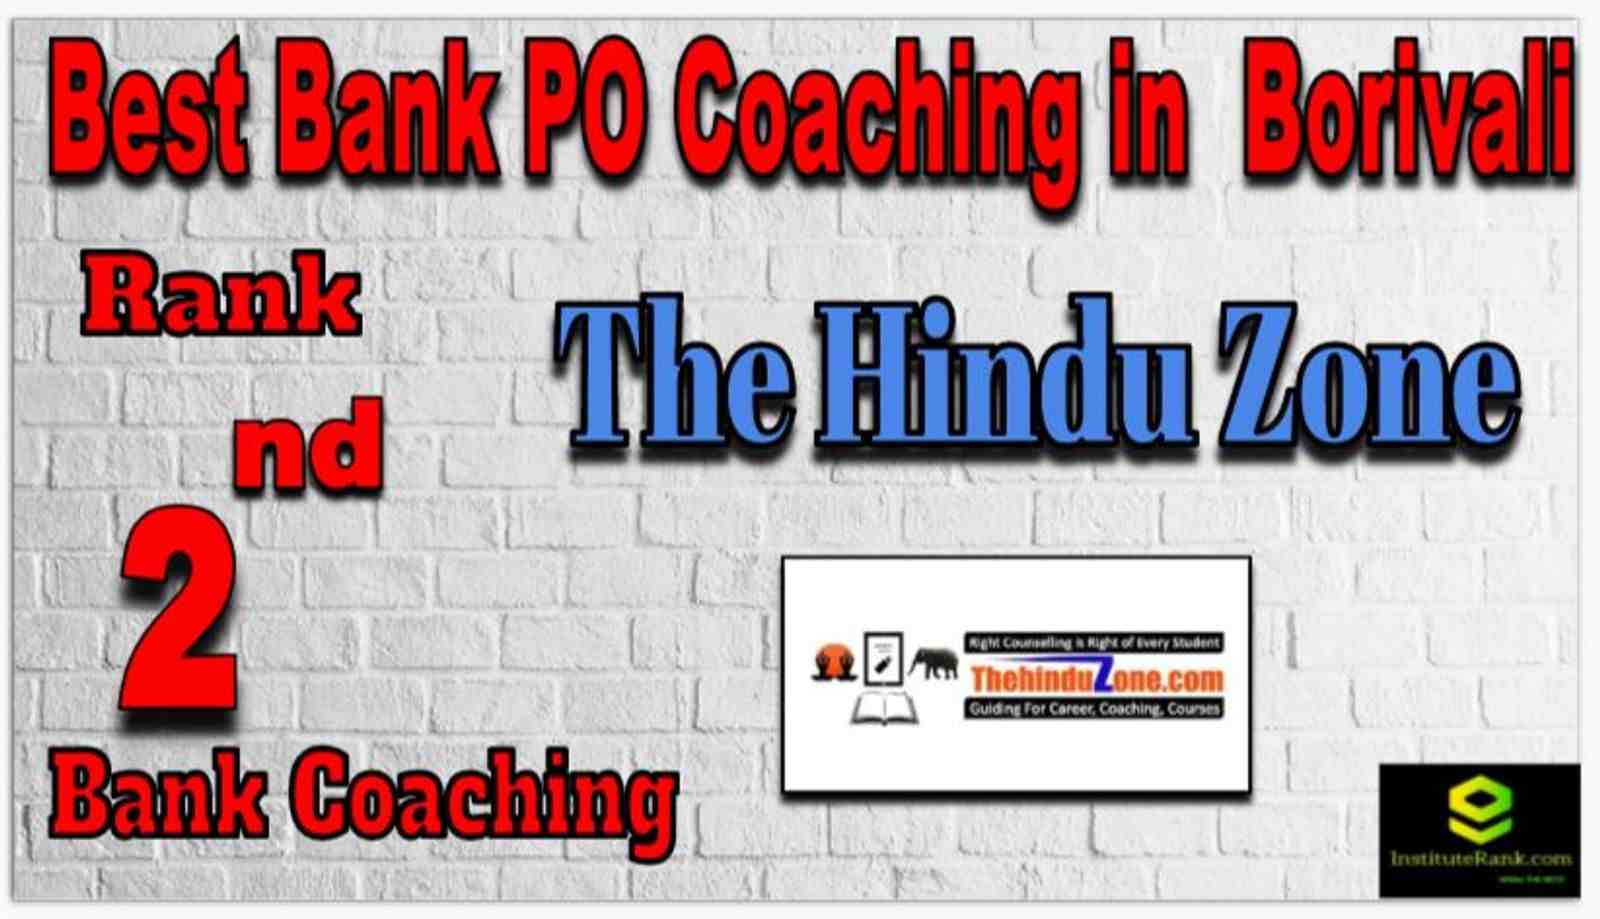 Rank 2 Best Bank PO Coachings in Borivali